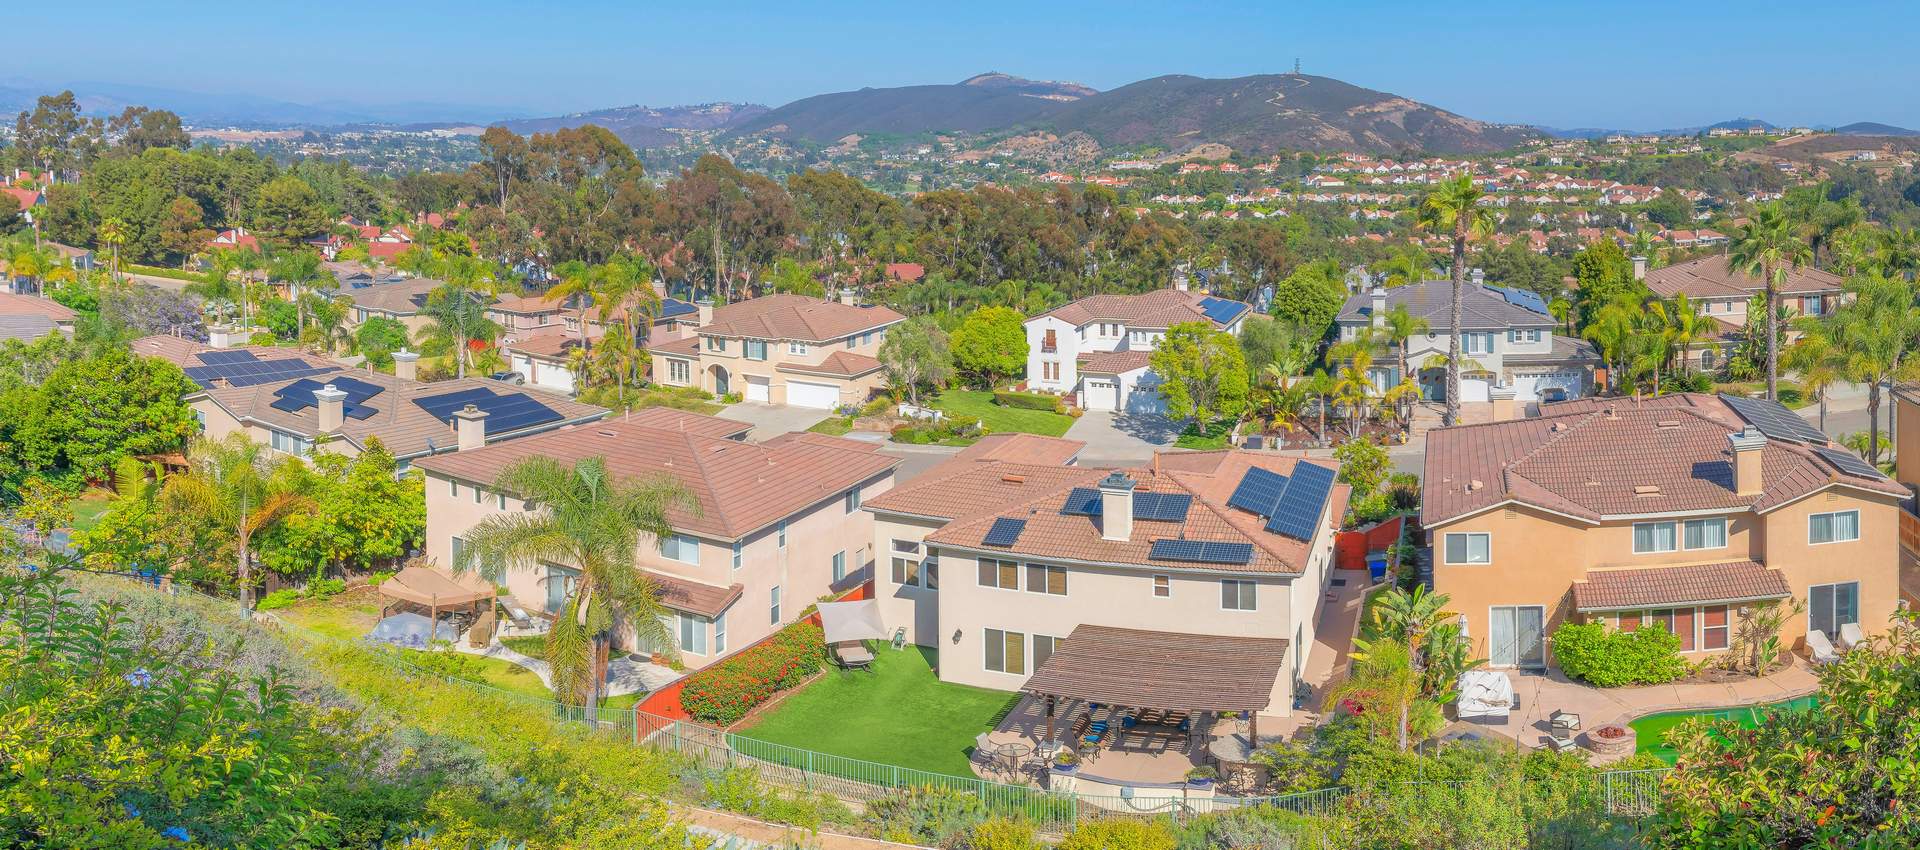 San Diego Residential Solar Installation Company: